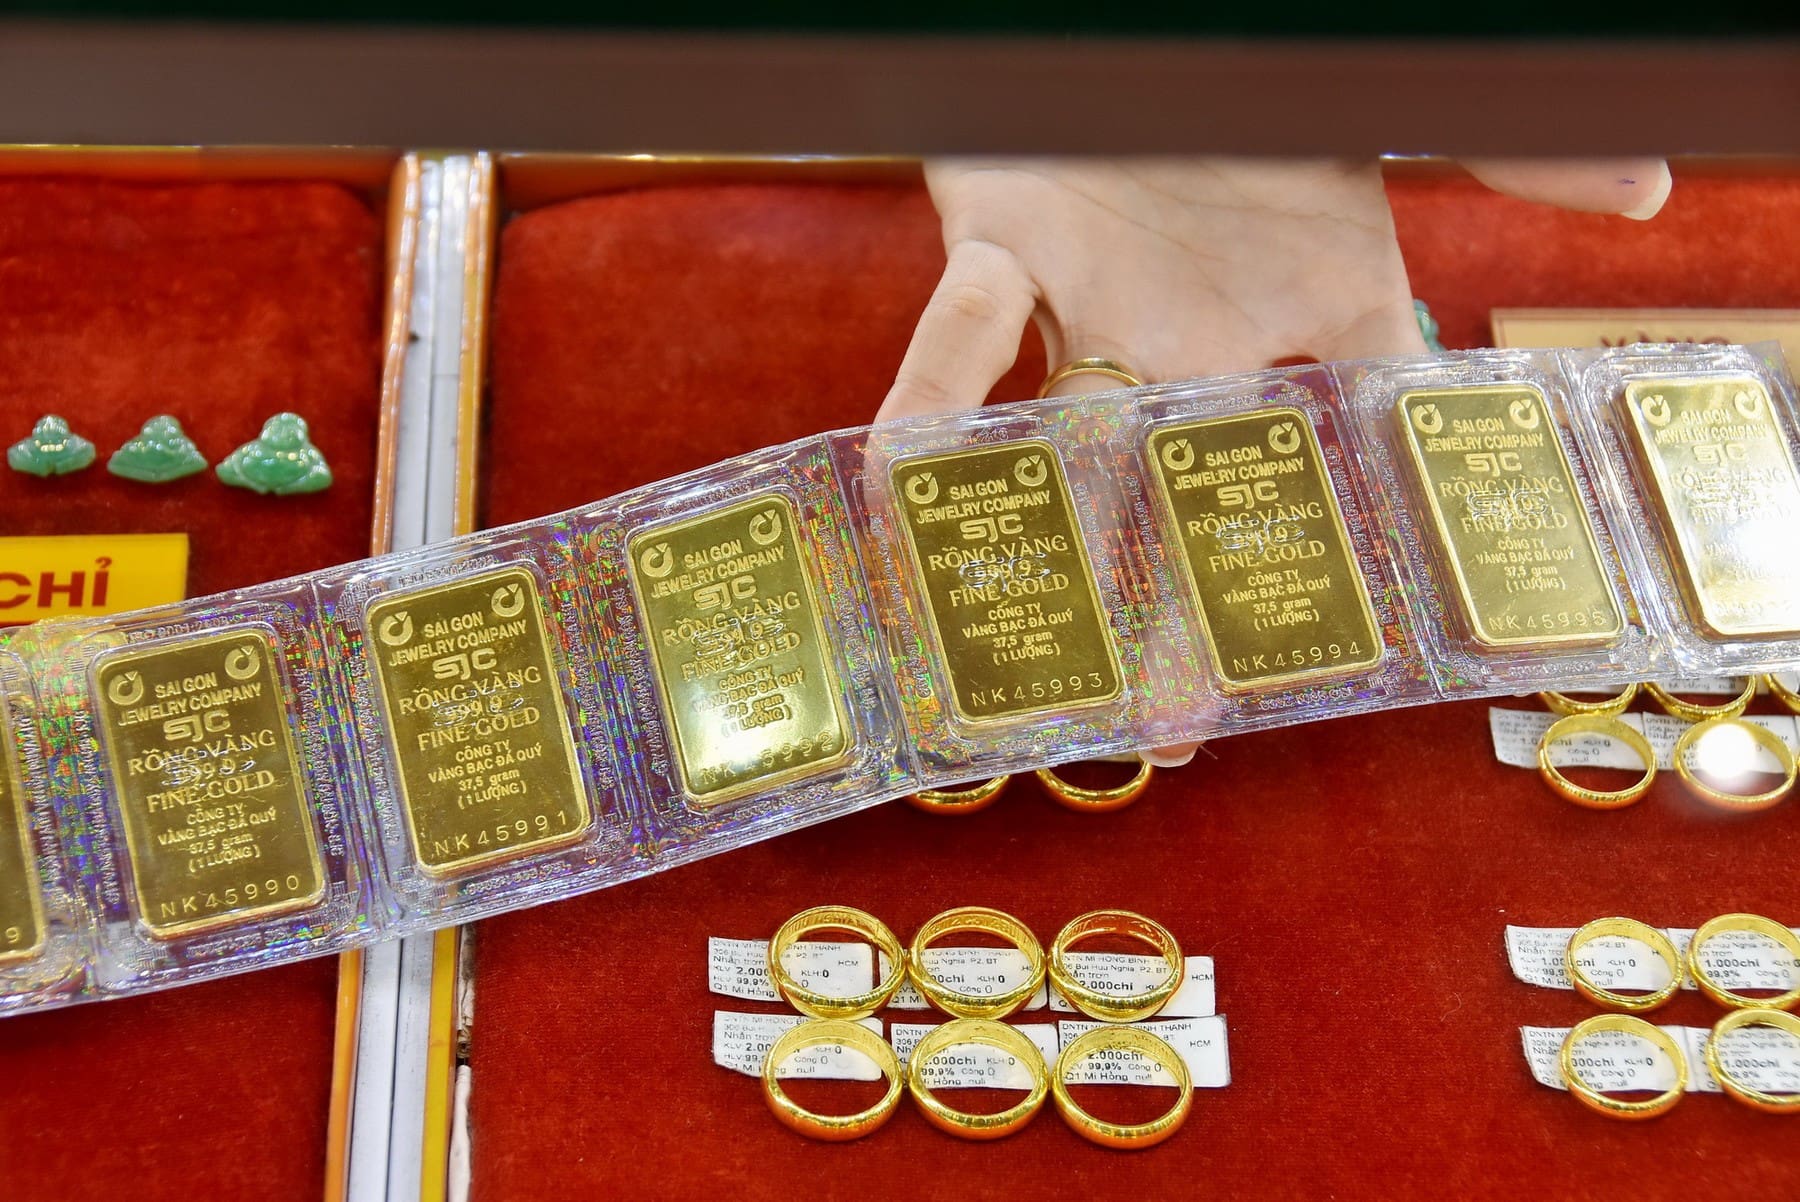 Nhu cầu tiêu thụ vàng của người dân giảm cũng đã ảnh hưởng đến kết quả kinh doanh của các doanh nghiệp vàng trong nước trong quý 3 vừa qua